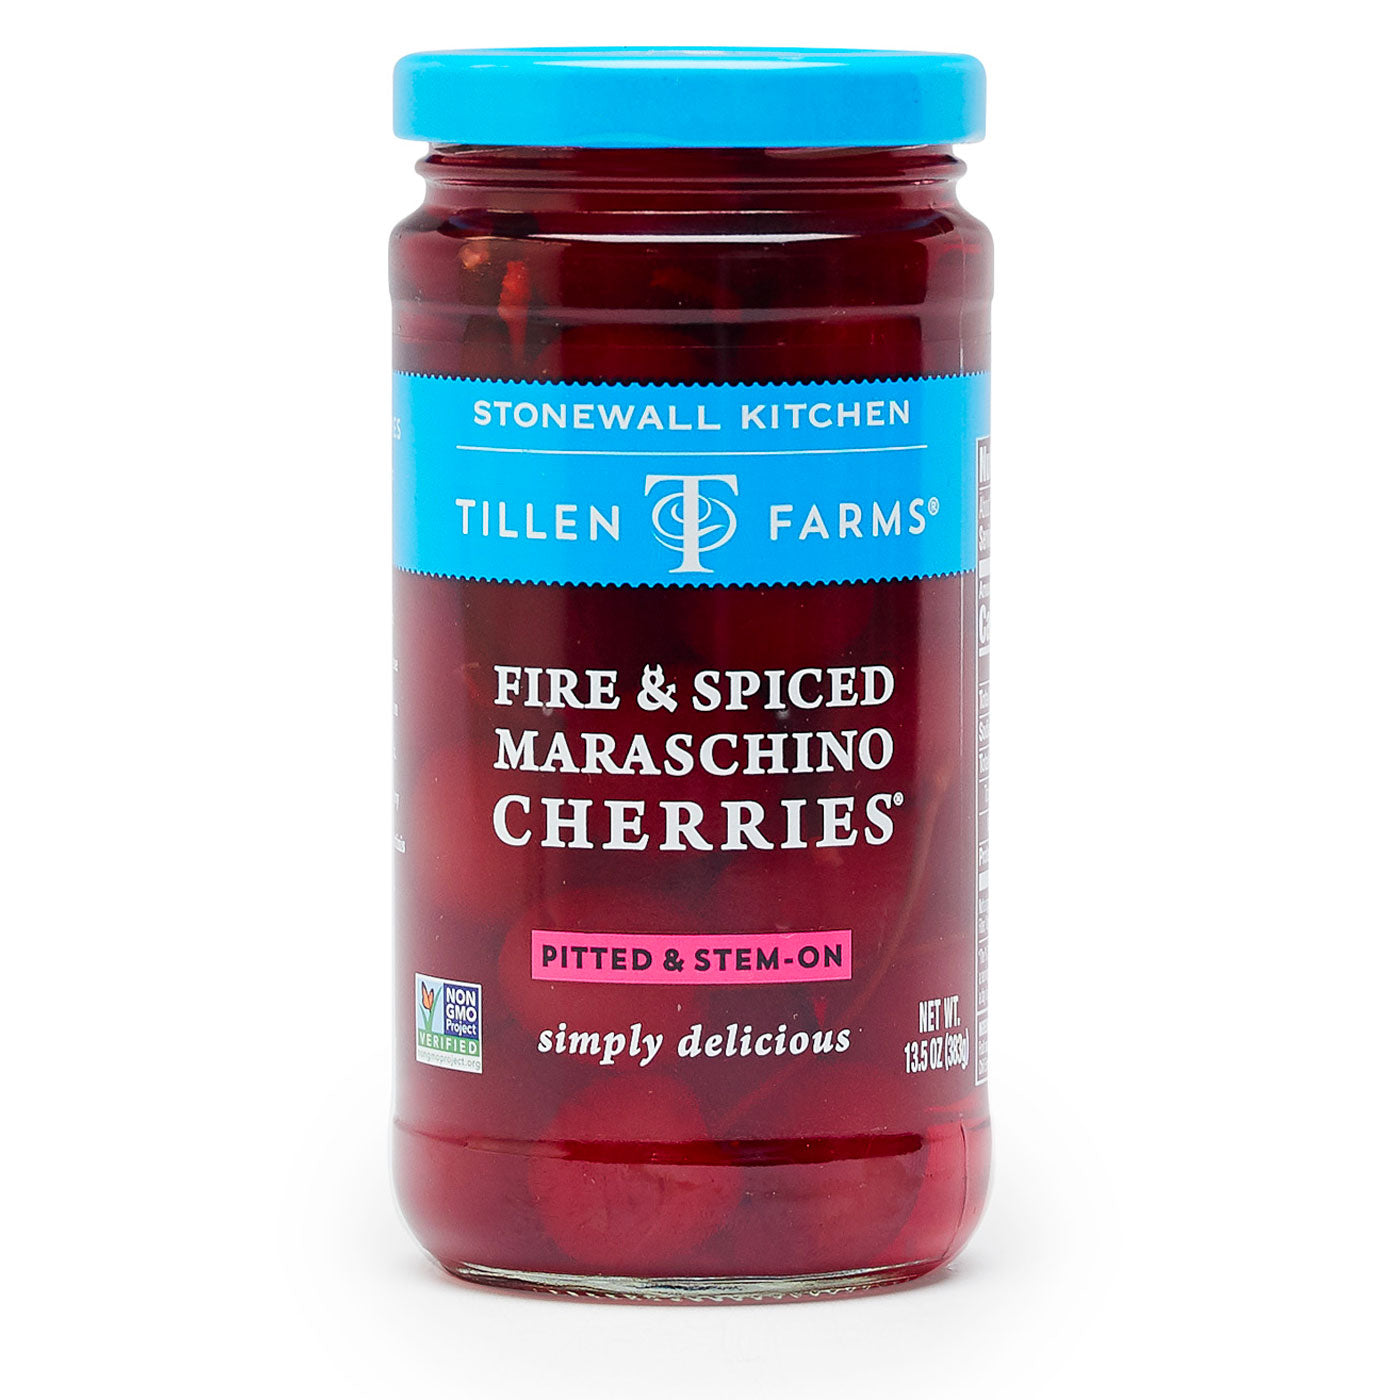 Tillen Farms Fire & Spiced Maraschino Cherries - 13.5 oz